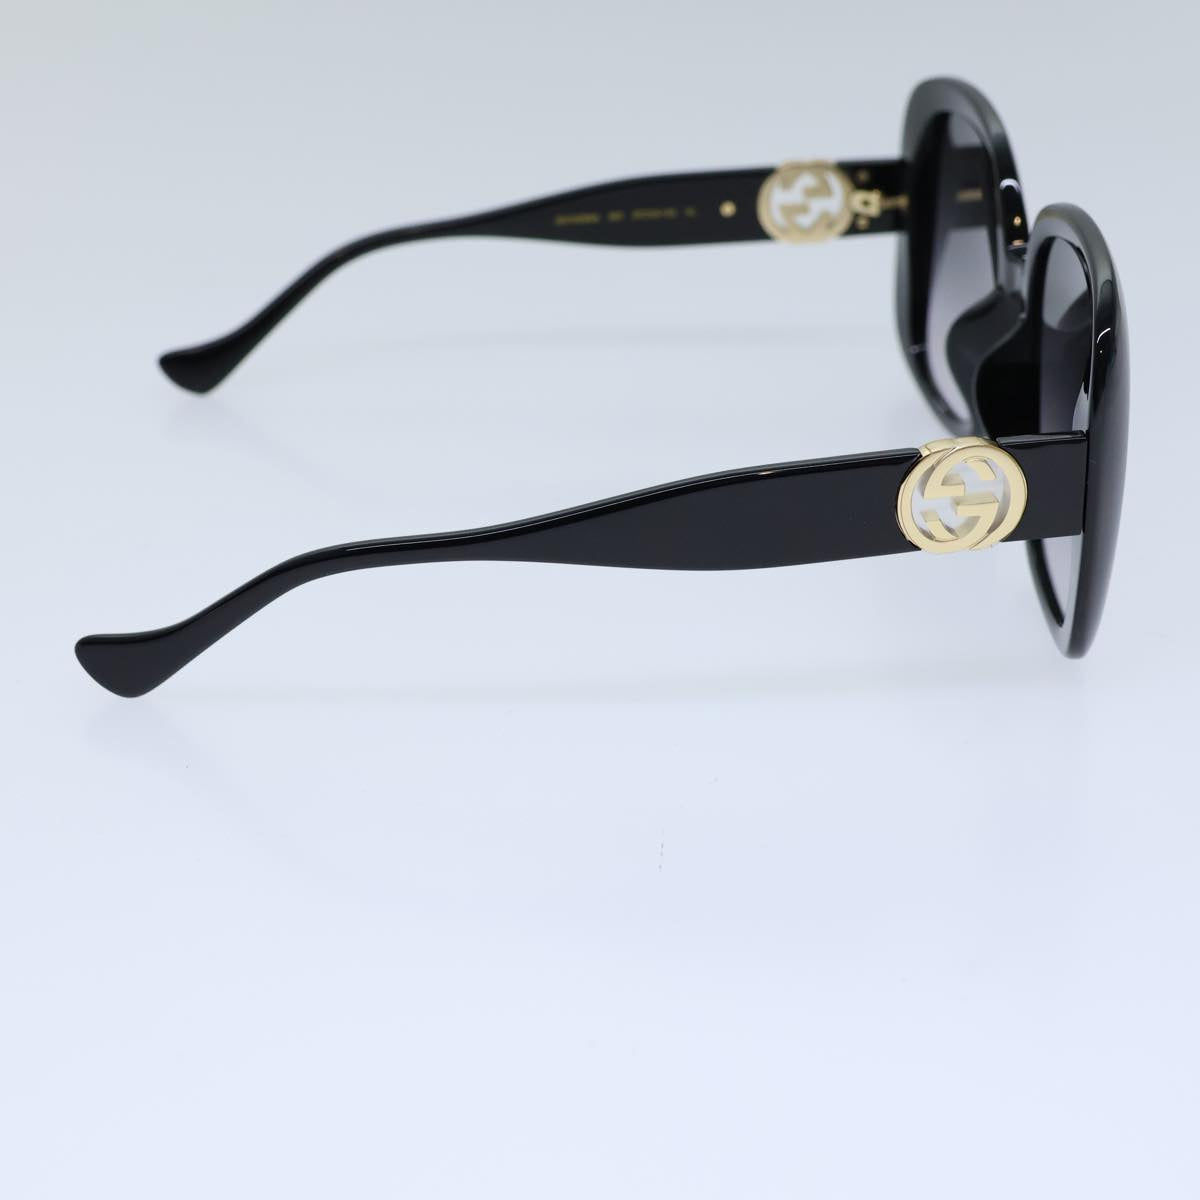 GUCCI Sunglasses plastic Black Auth 72911